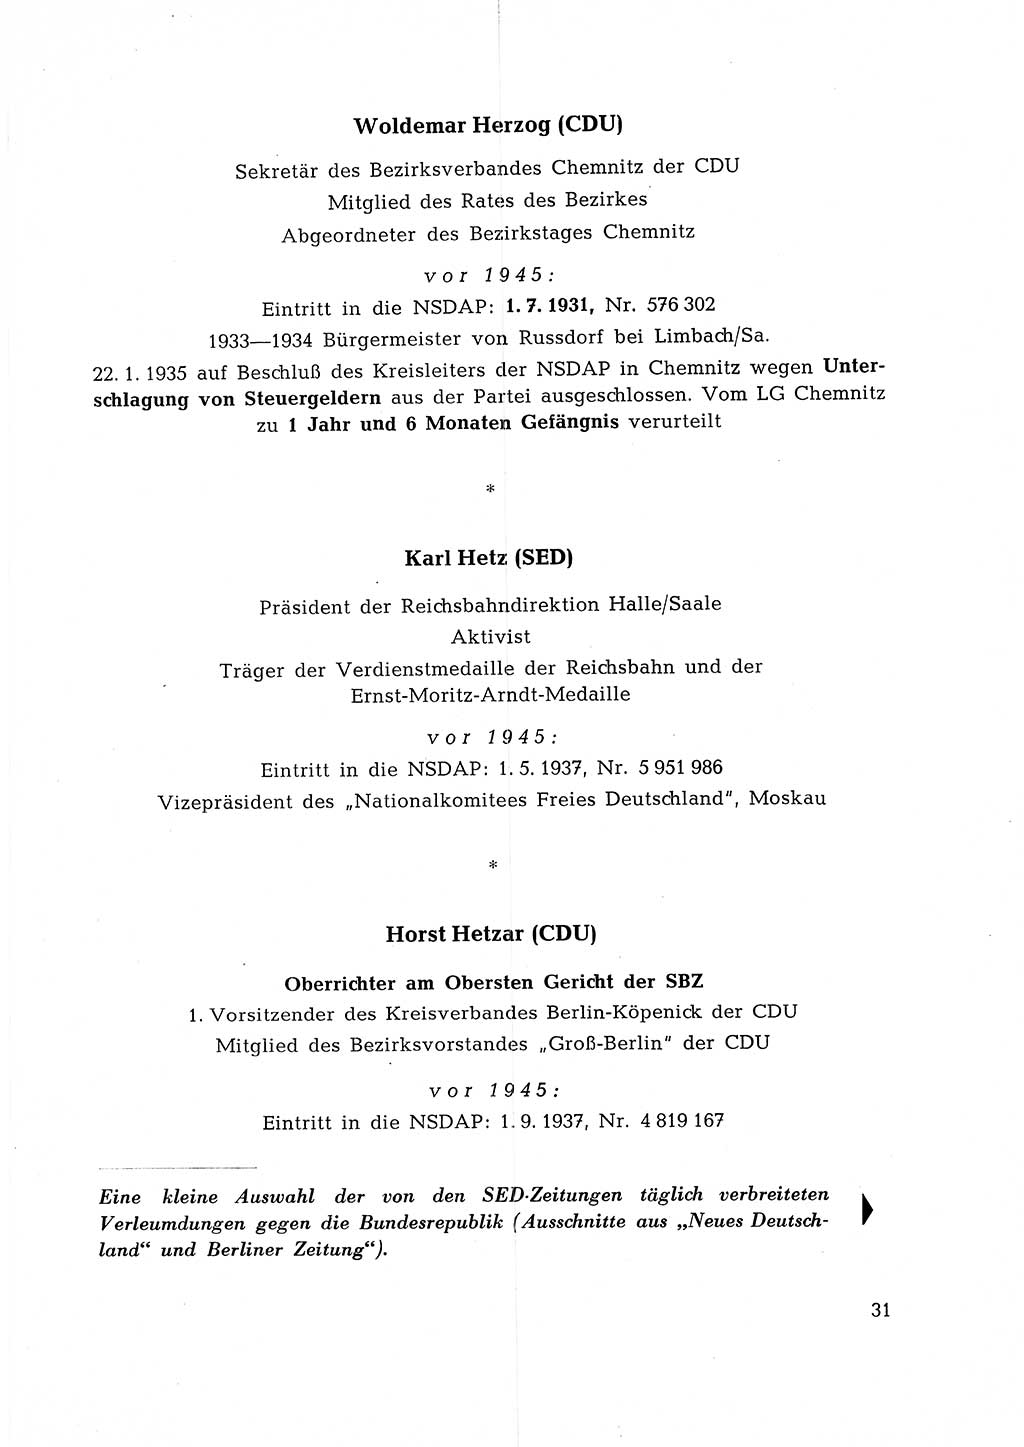 Ehemalige Nationalsozialisten in Pankows Diensten [Deutsche Demokratische Republik (DDR)] 1965, Seite 31 (Ehem. Nat.-Soz. DDR 1965, S. 31)